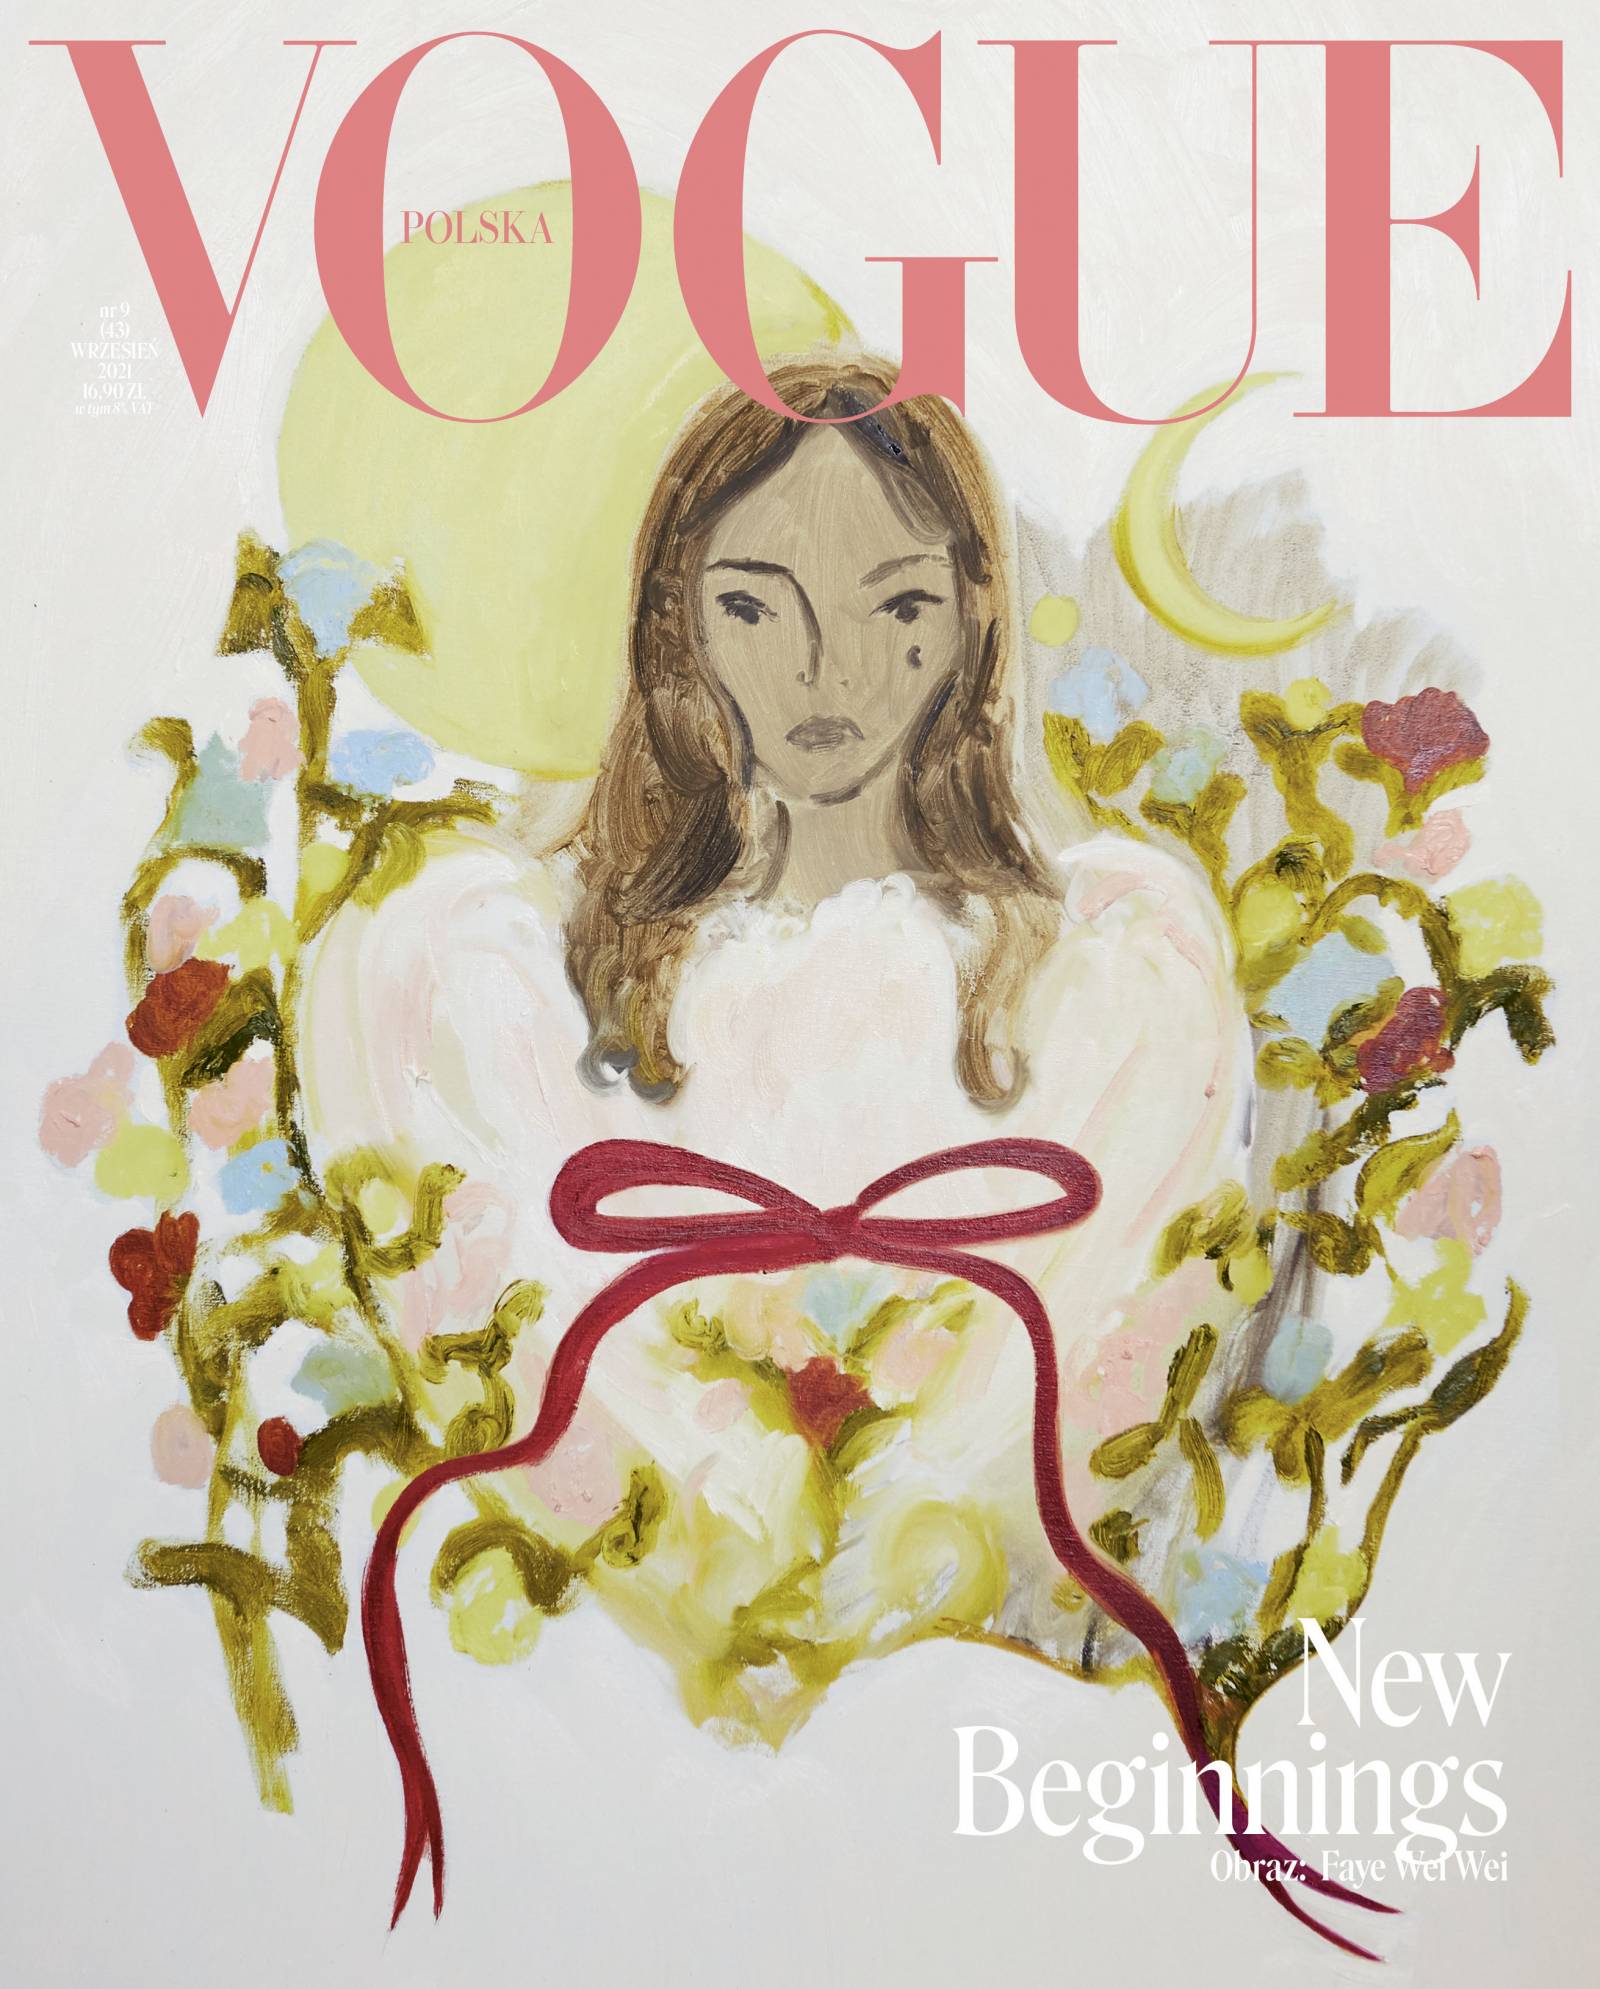 Okładka wrześniowego wydania Vogue Polska autorstwa Faye Wei Wei